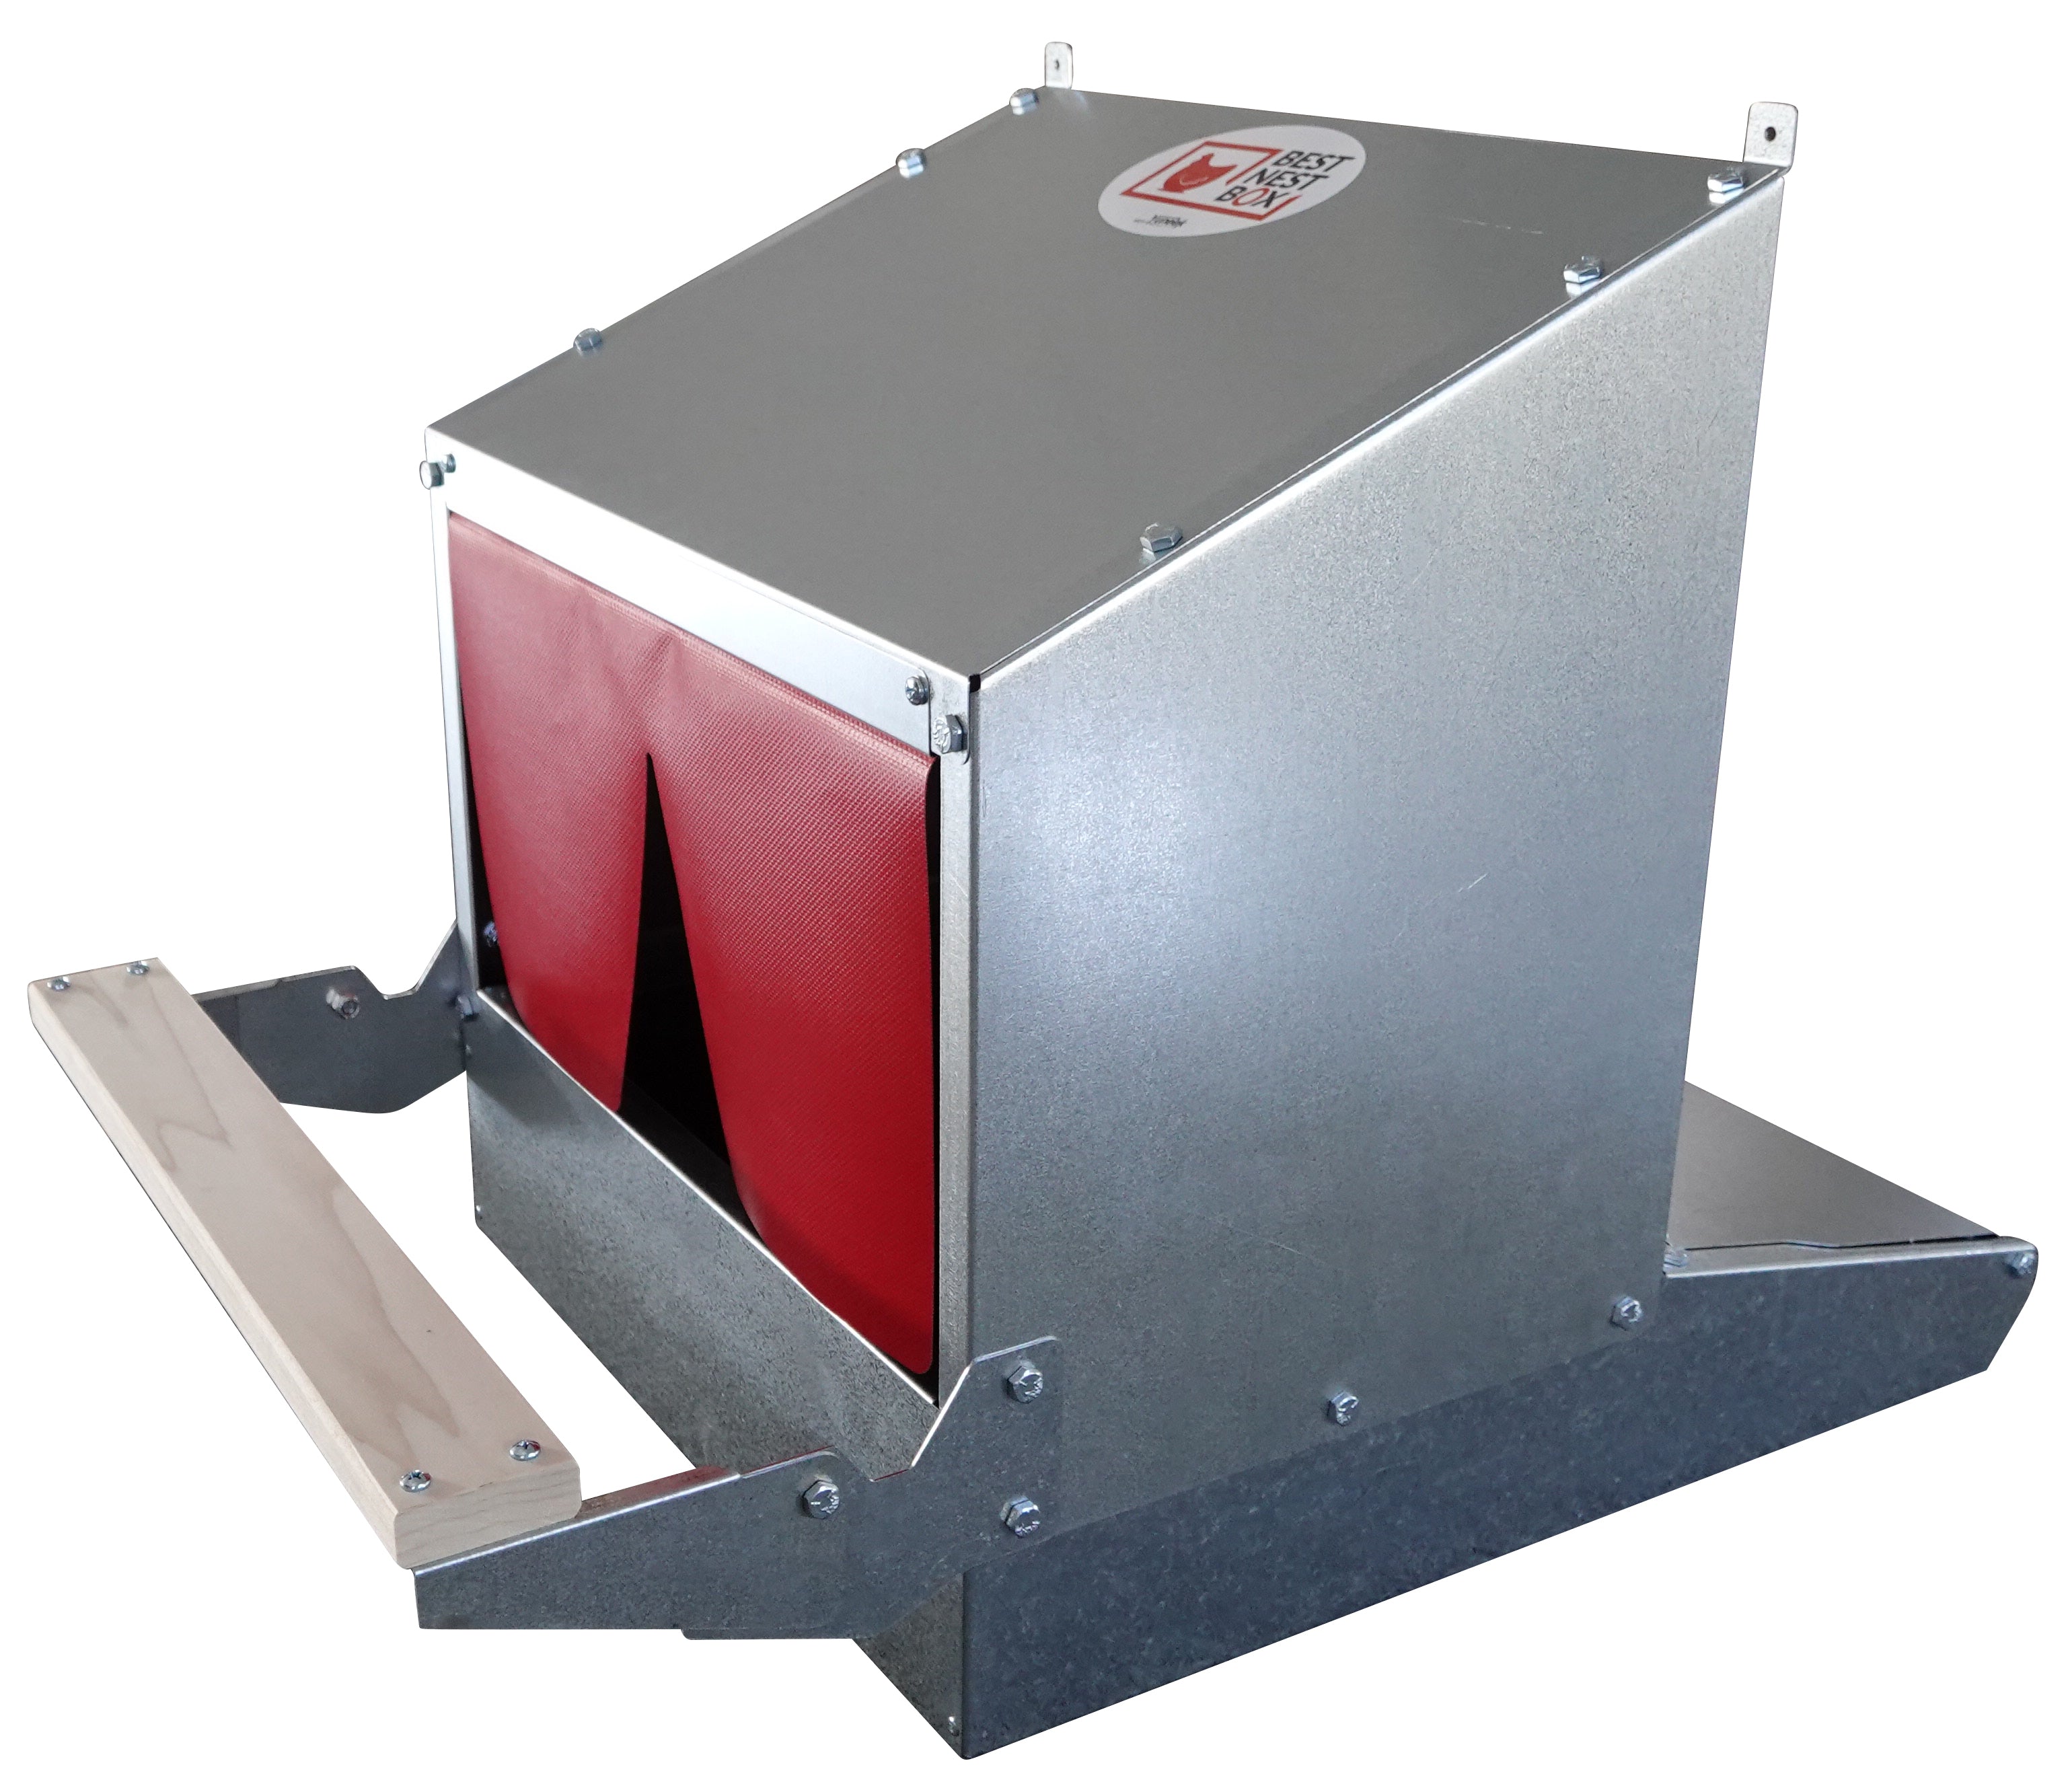 The Original PerchPopper - Auto nest box opener-Ready to ship